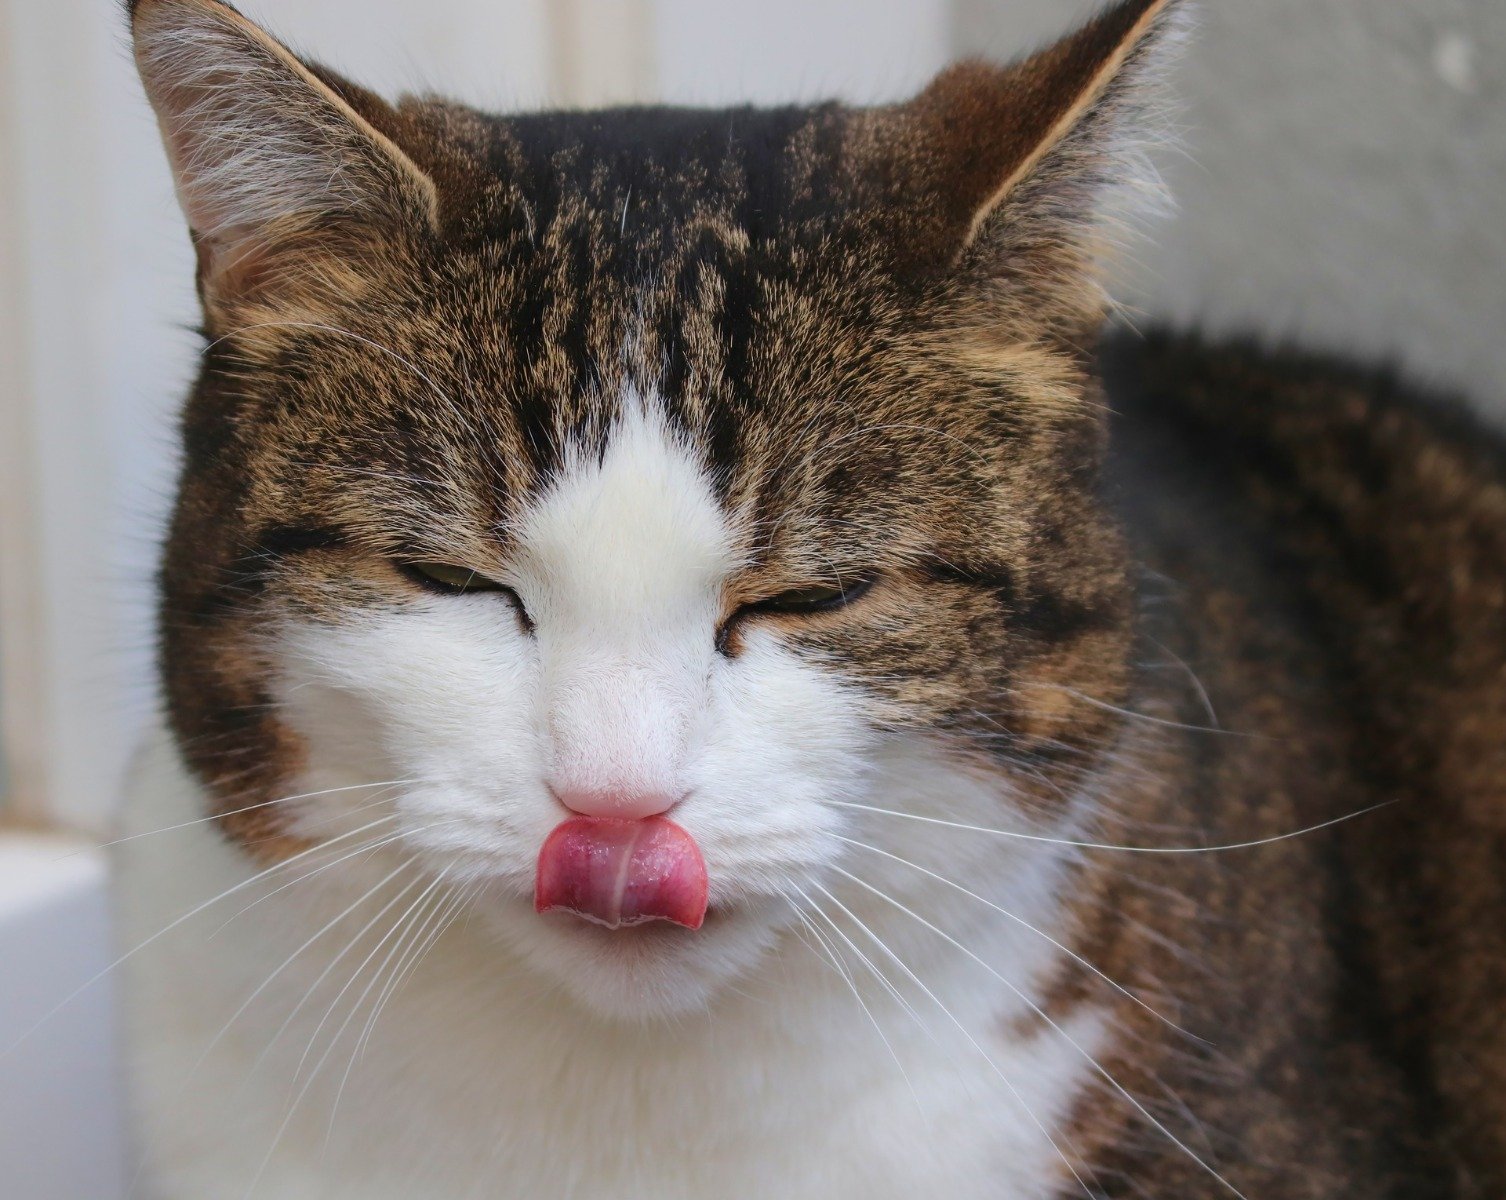 Kot dotyka językiem swojego pyszczka